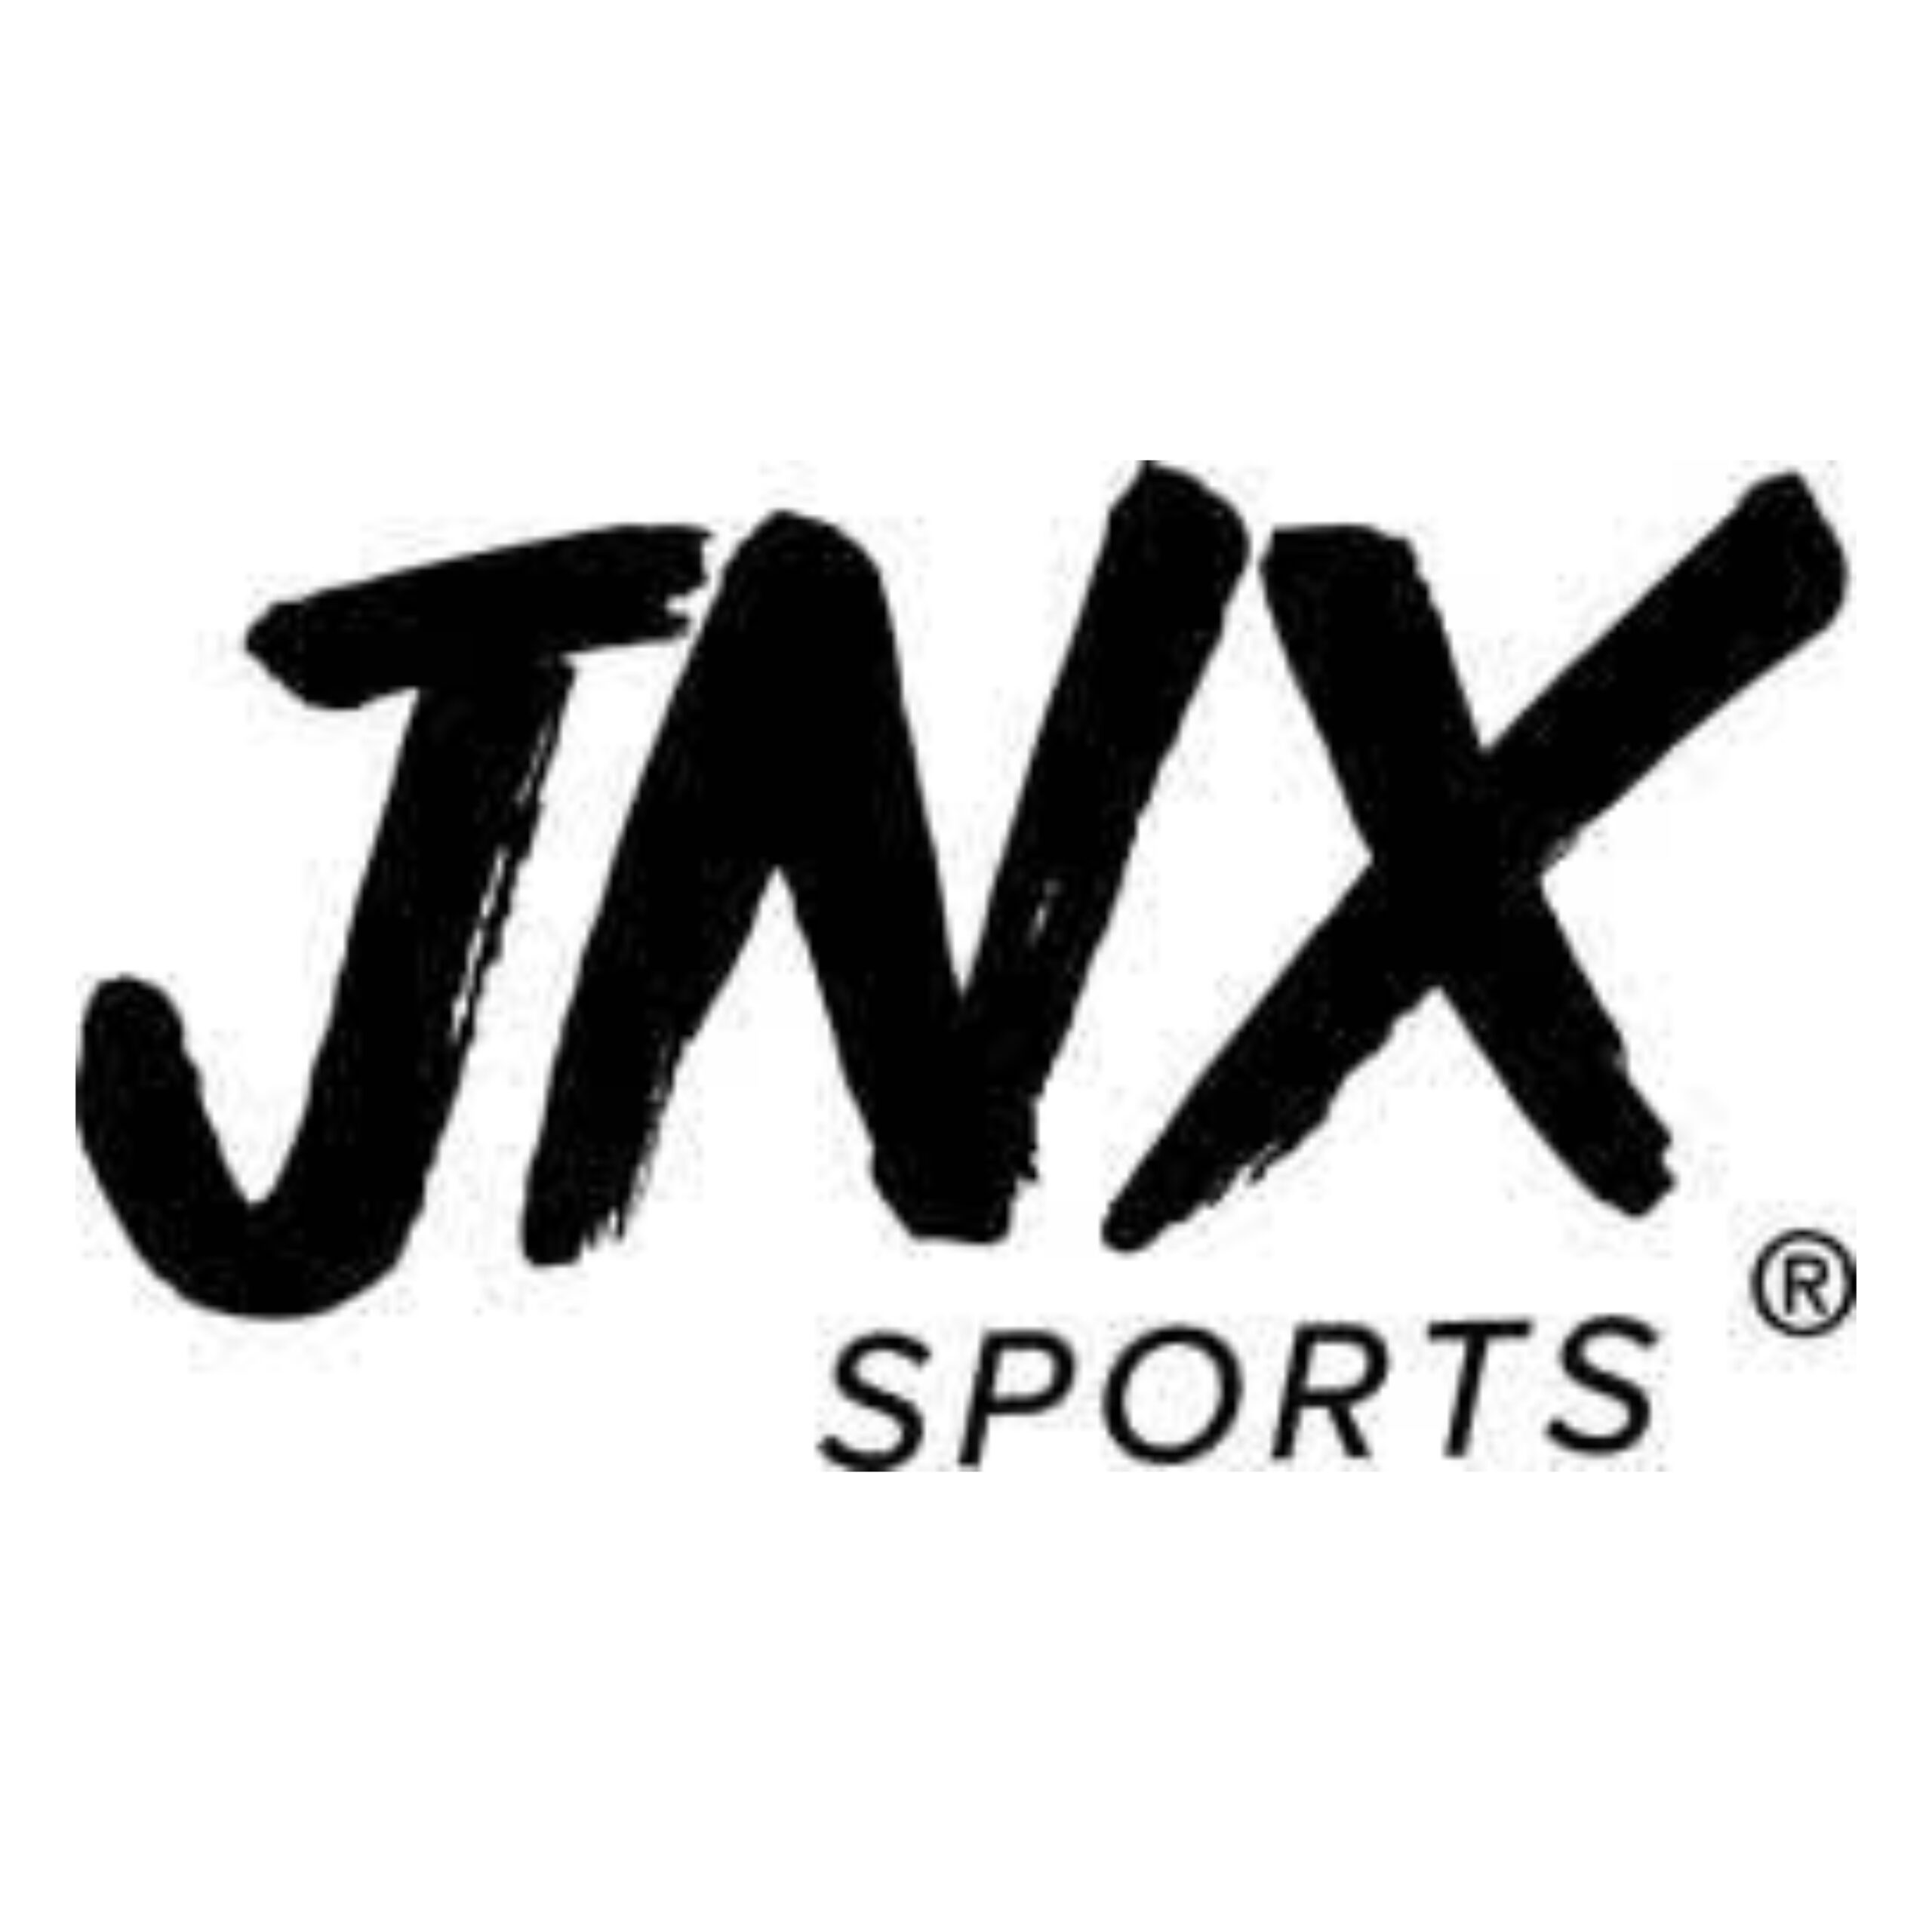 JNX SPORTS